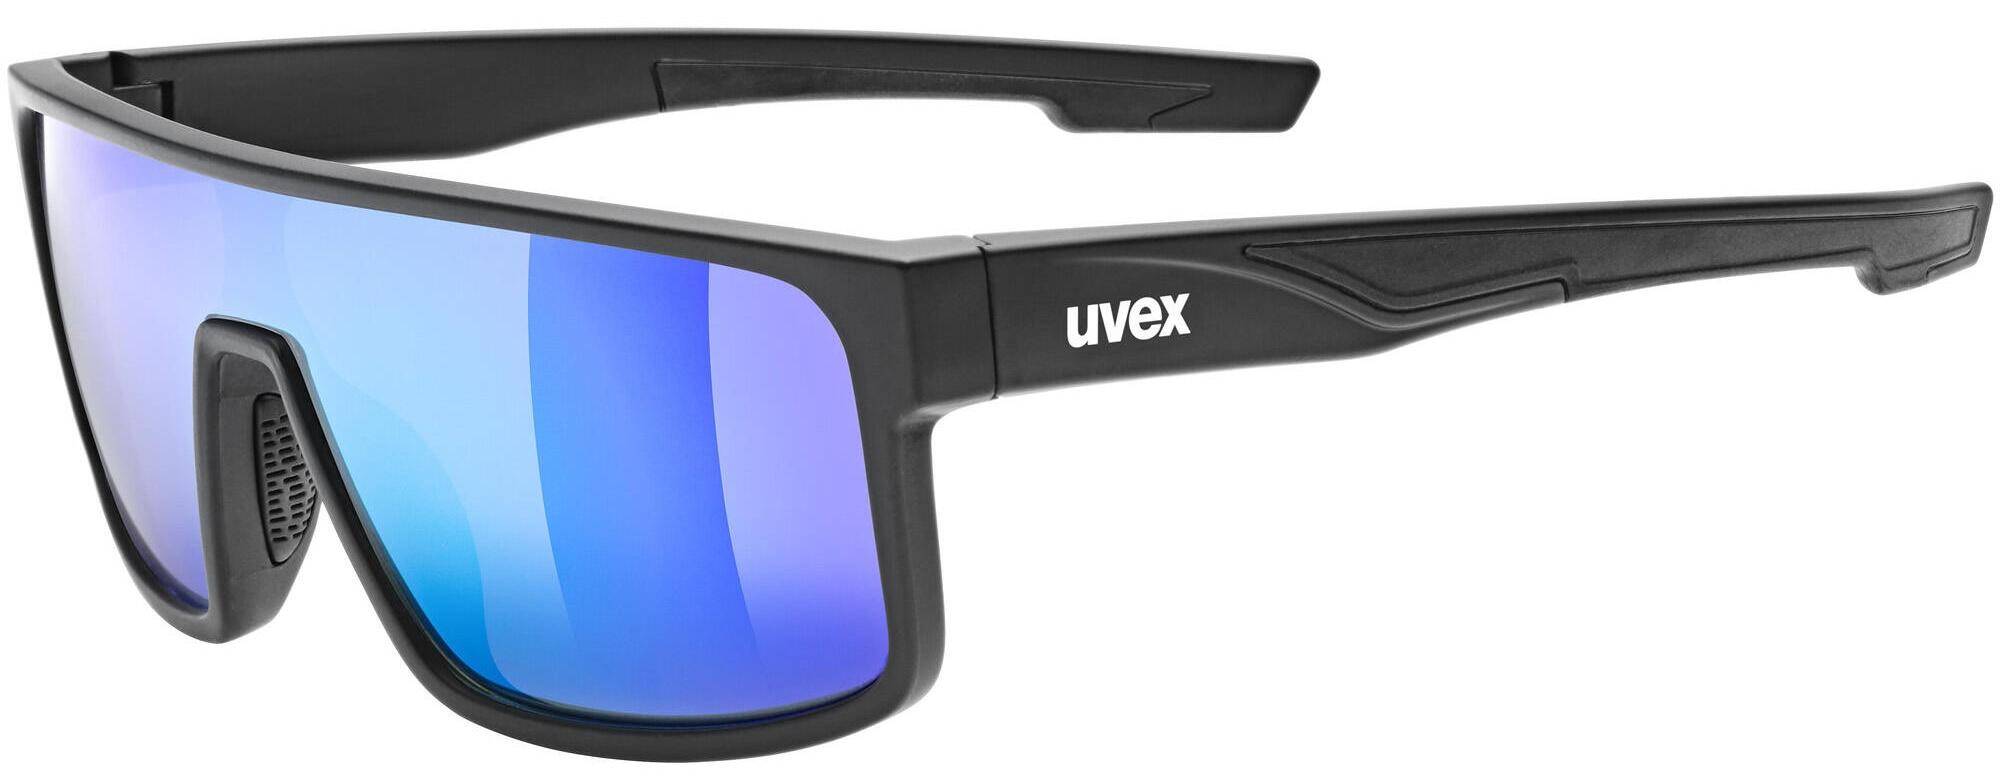 Okulary Uvex lgl 51 czarne szy. (Zdjęcie 2)